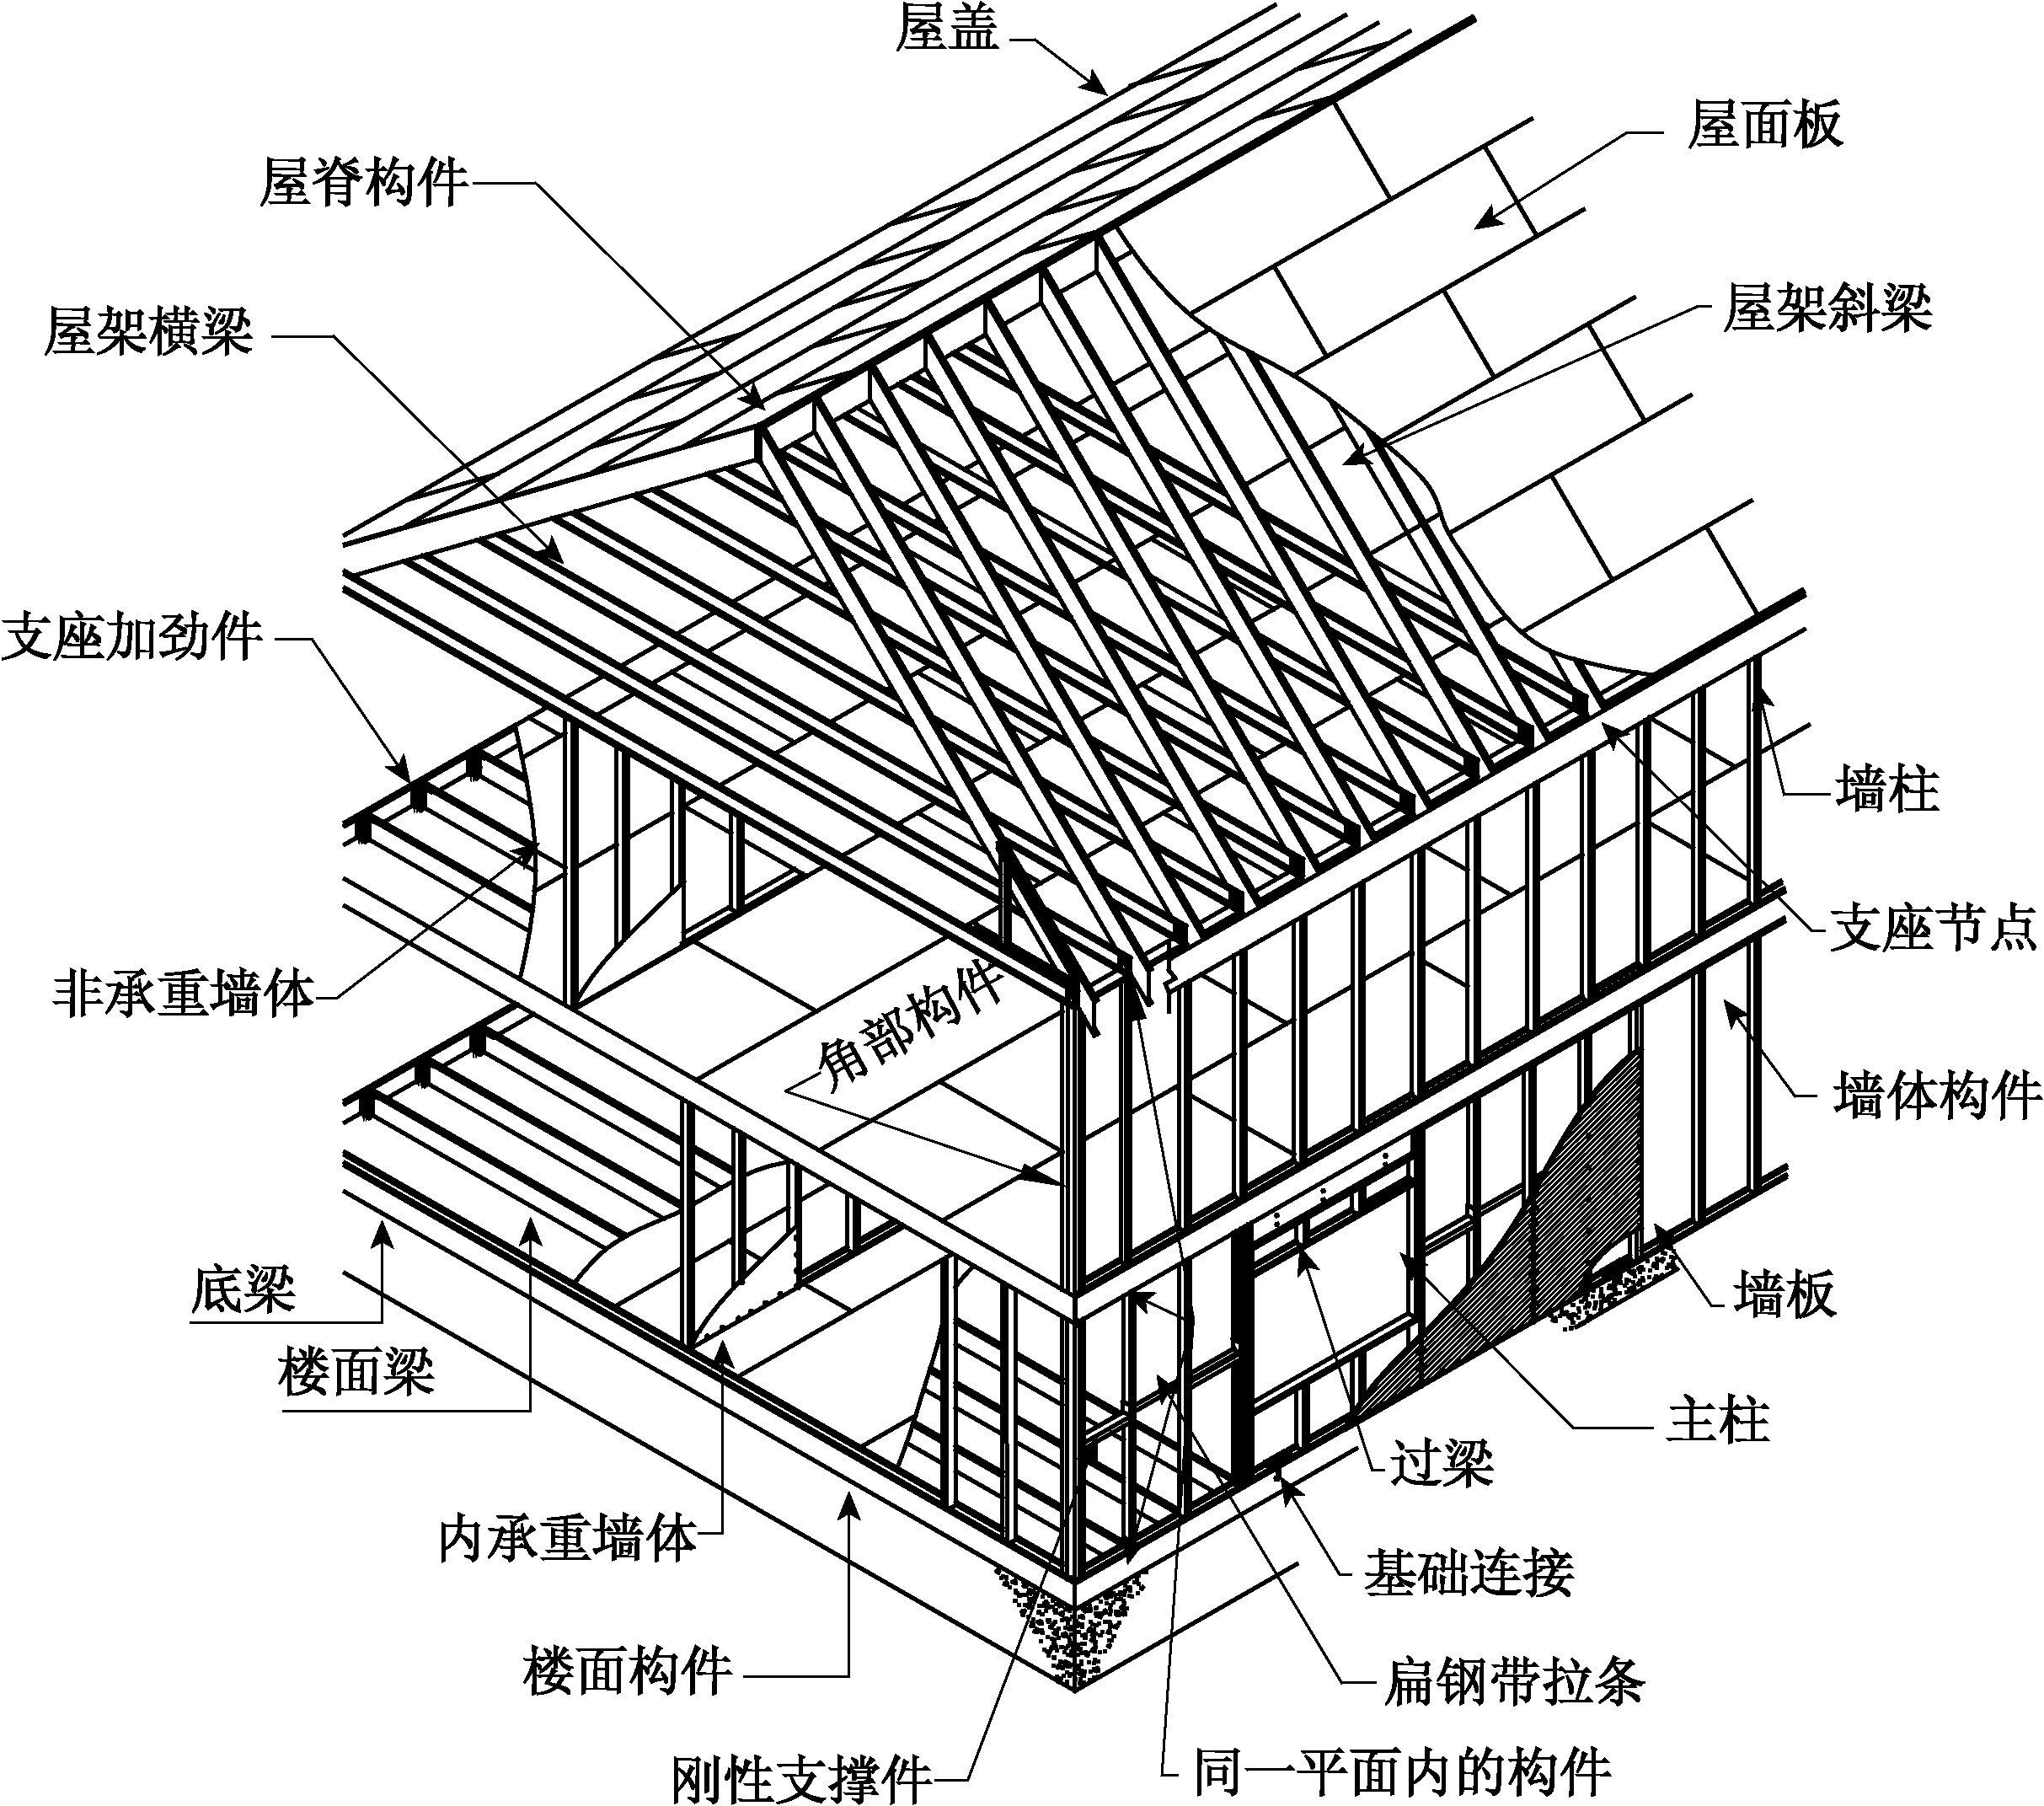 1.2.1 低层冷弯薄壁型钢房屋体系